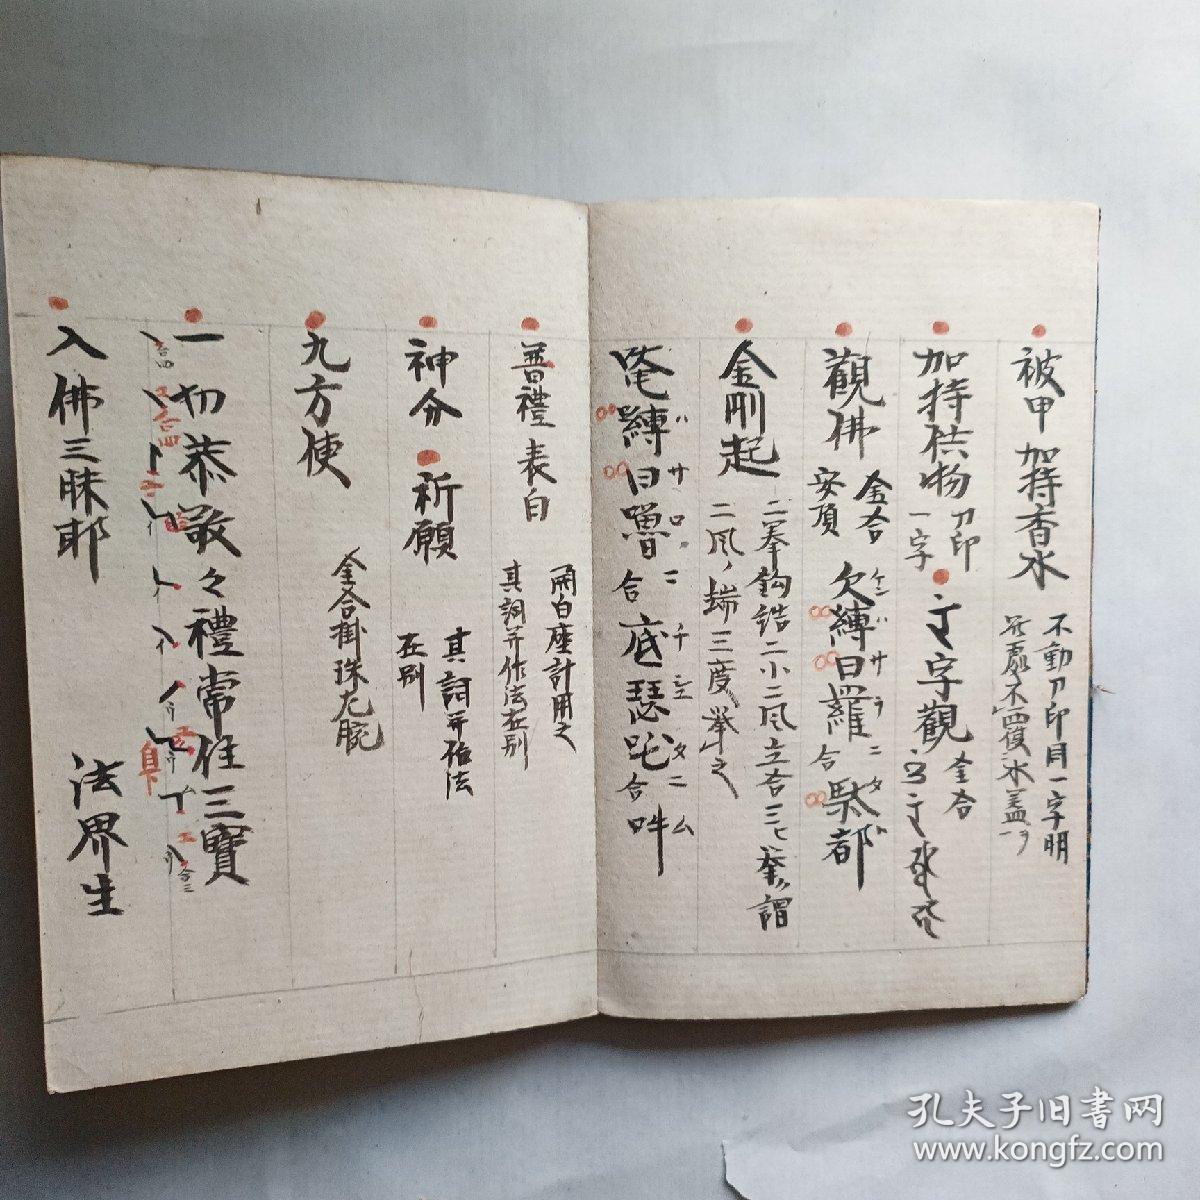 日本《理趣经法》
《理趣经》是特受日本密教界所尊崇的密教经轨之一。长谷寺。经折装，抄写本。延享，弘化年间完成。